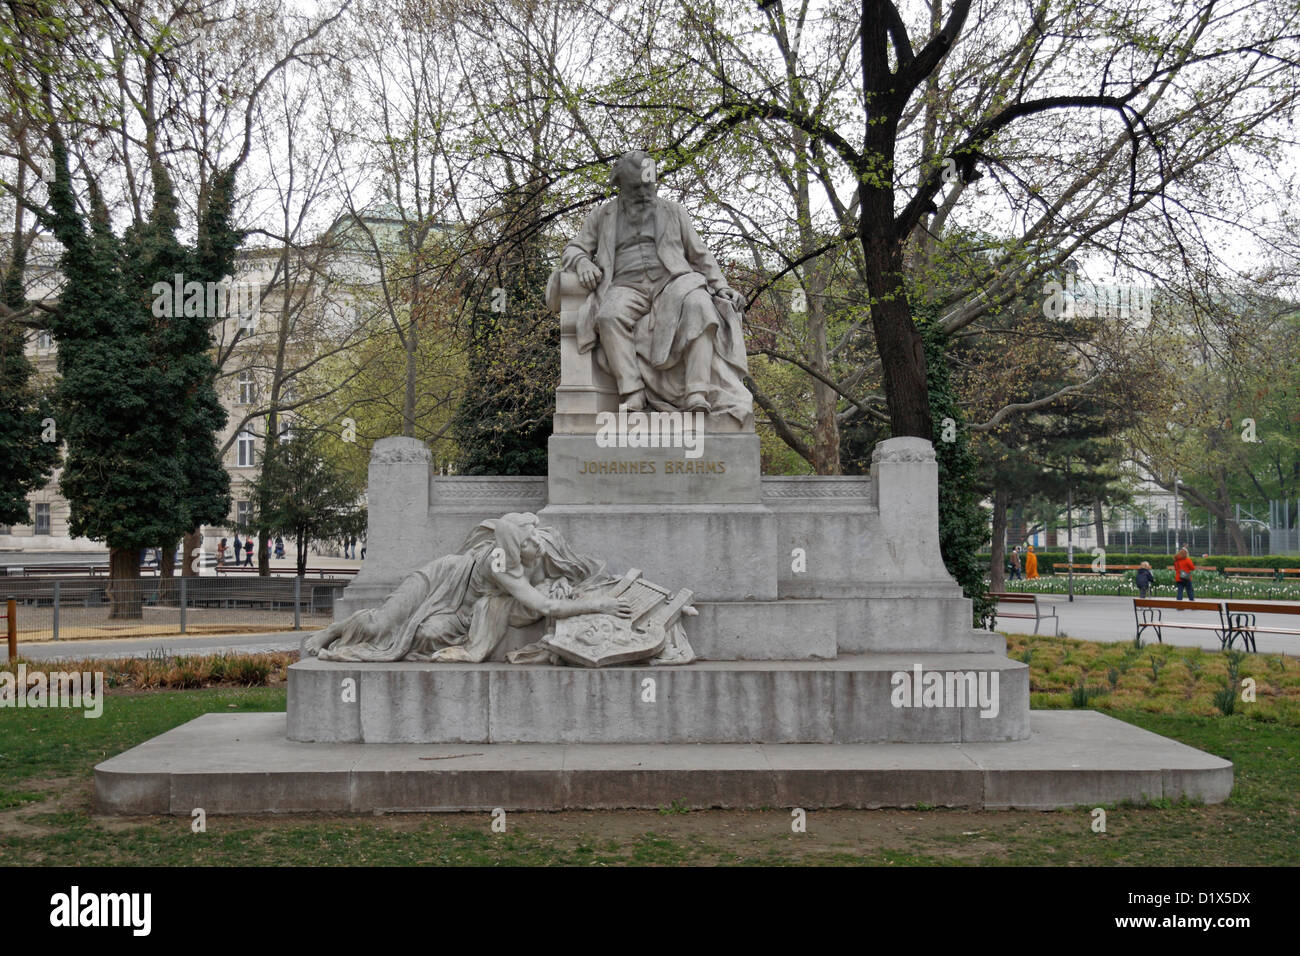 The Johannes Brahms statue in Resselpark, Karlsplatz, Vienna, Austria. Stock Photo